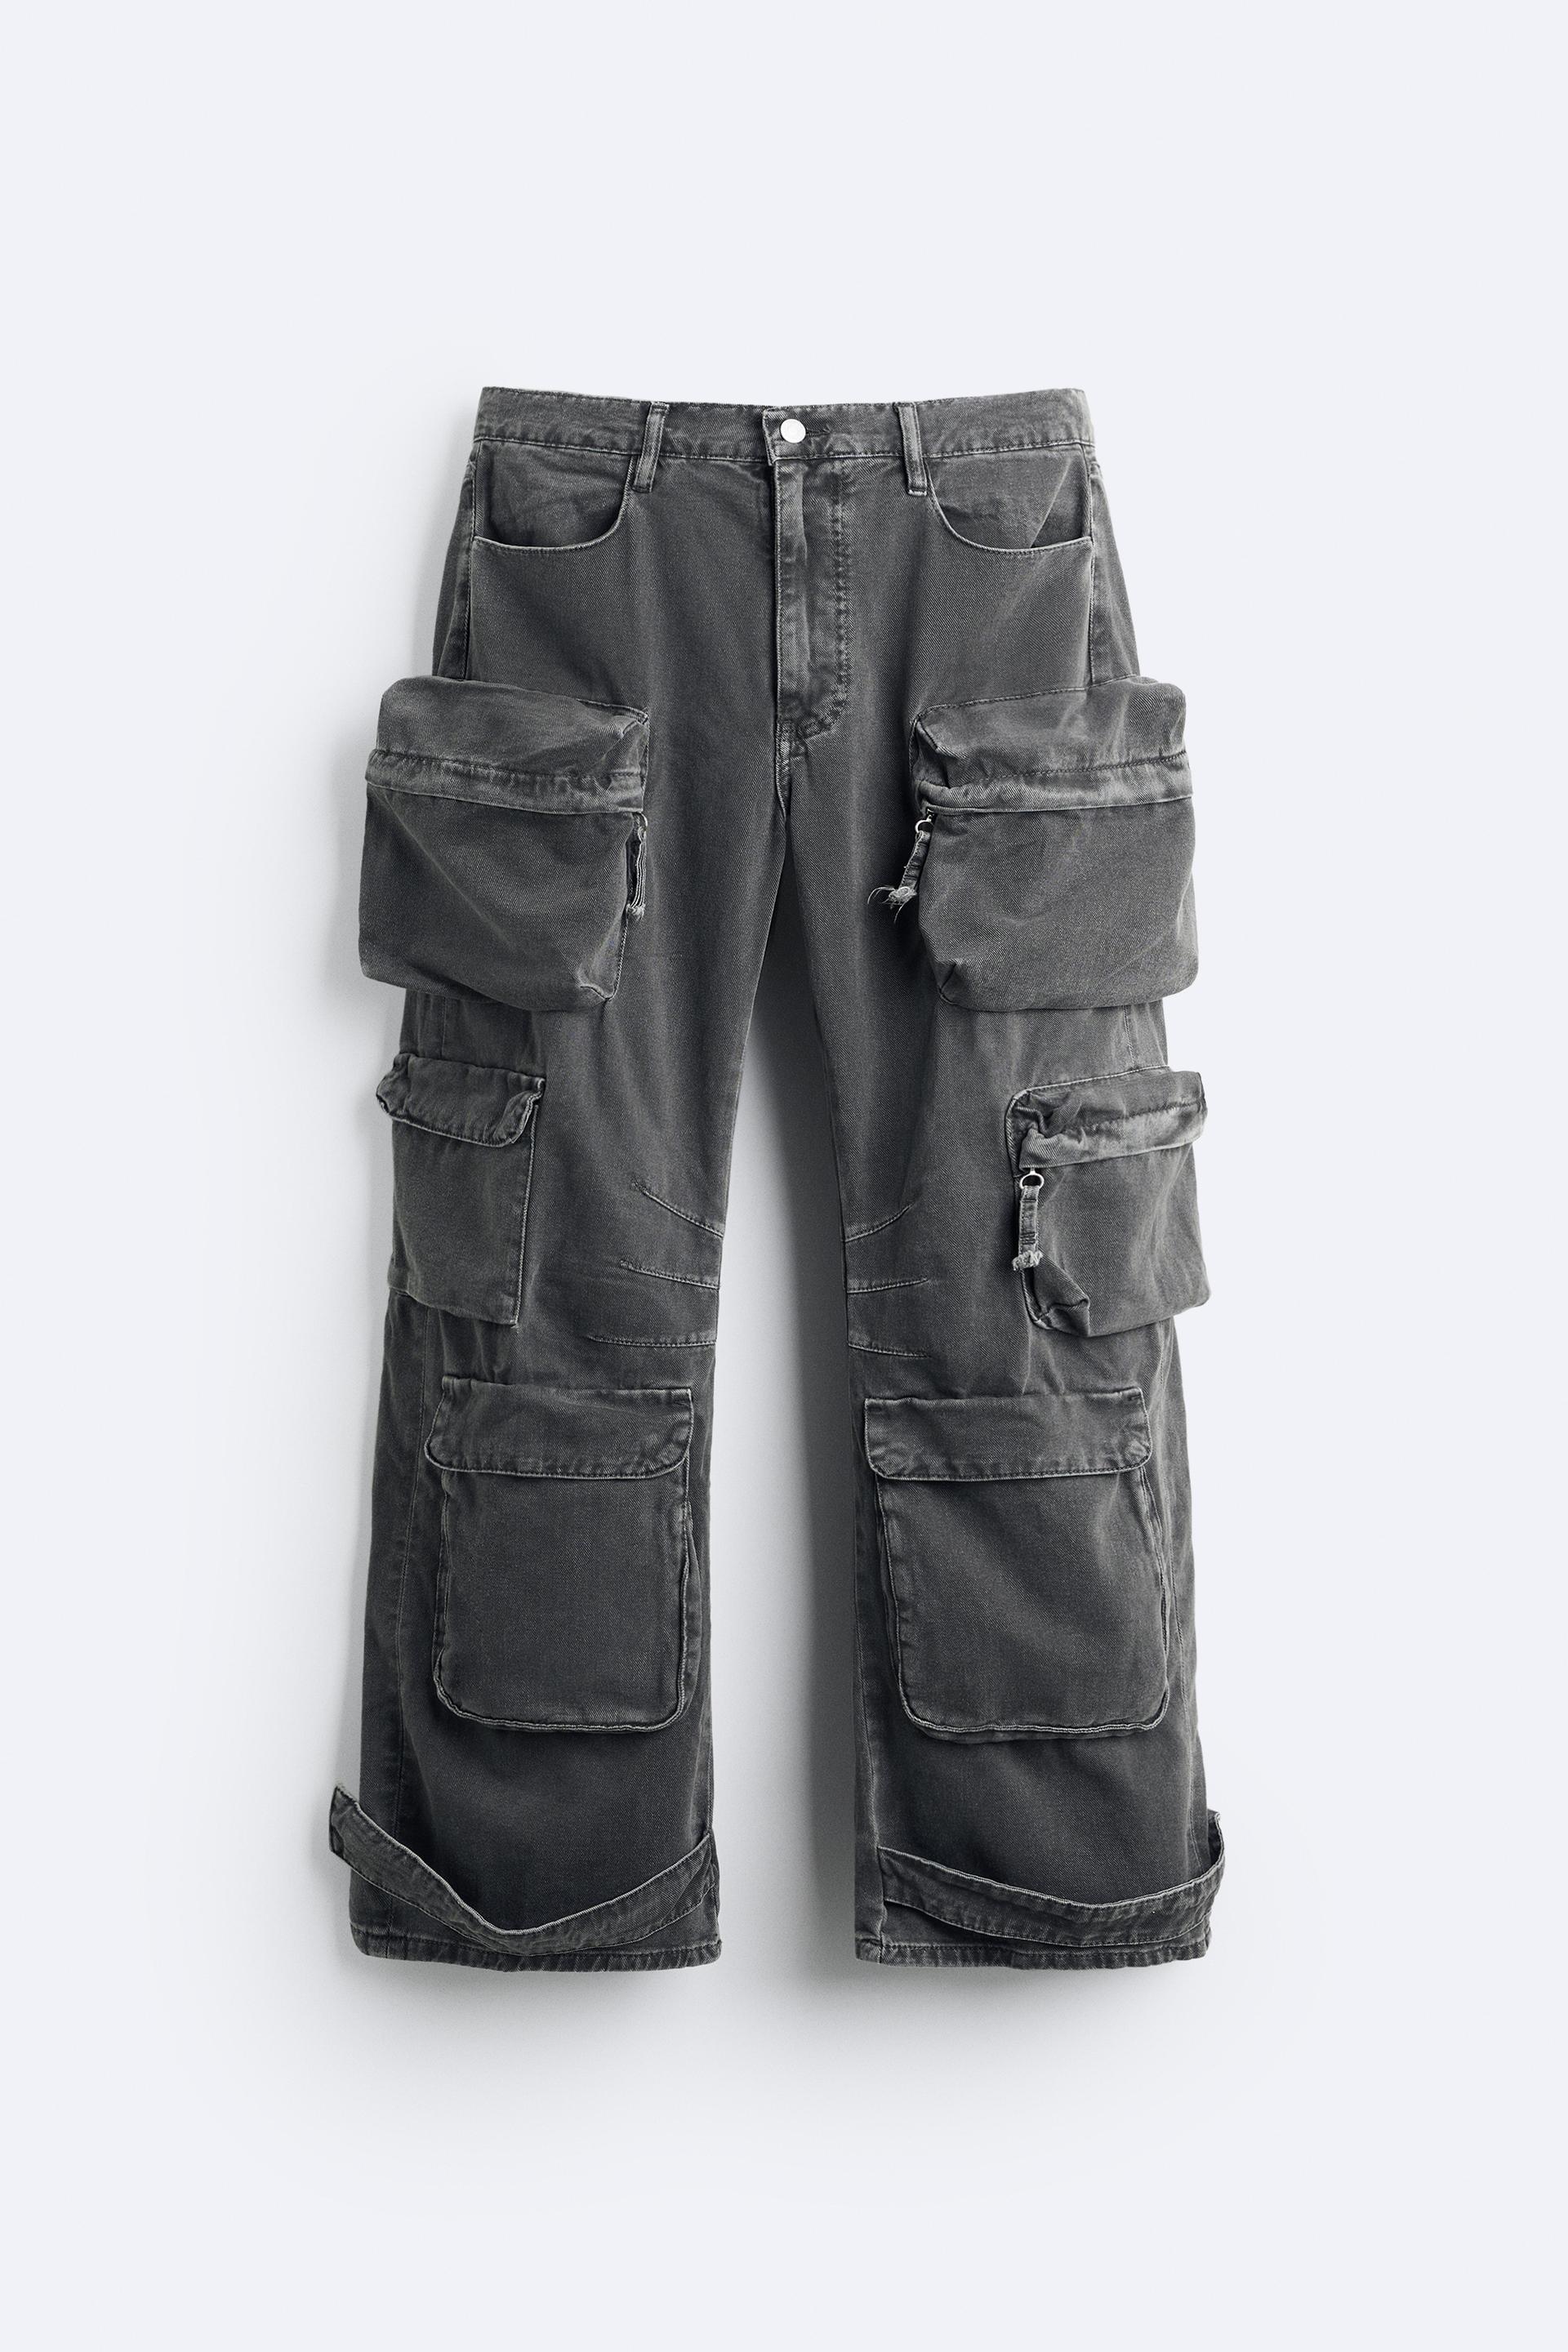 Zara, Pants, Zara Utility Cargo Jeans